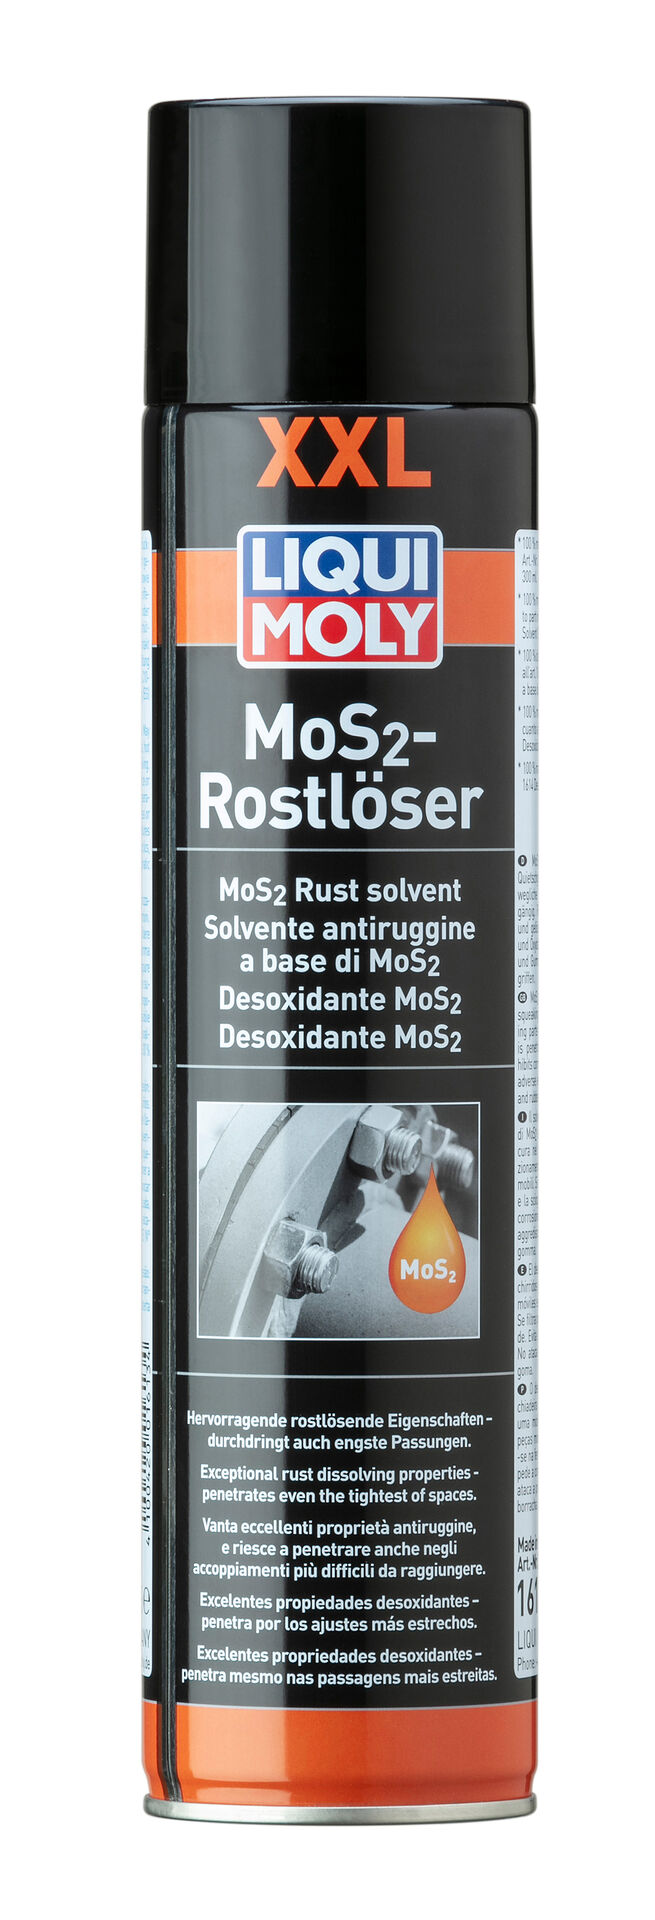 Liqui Moly XXL MoS2 Rostlöser Rostentferner Gleitmittel Spray 600ml